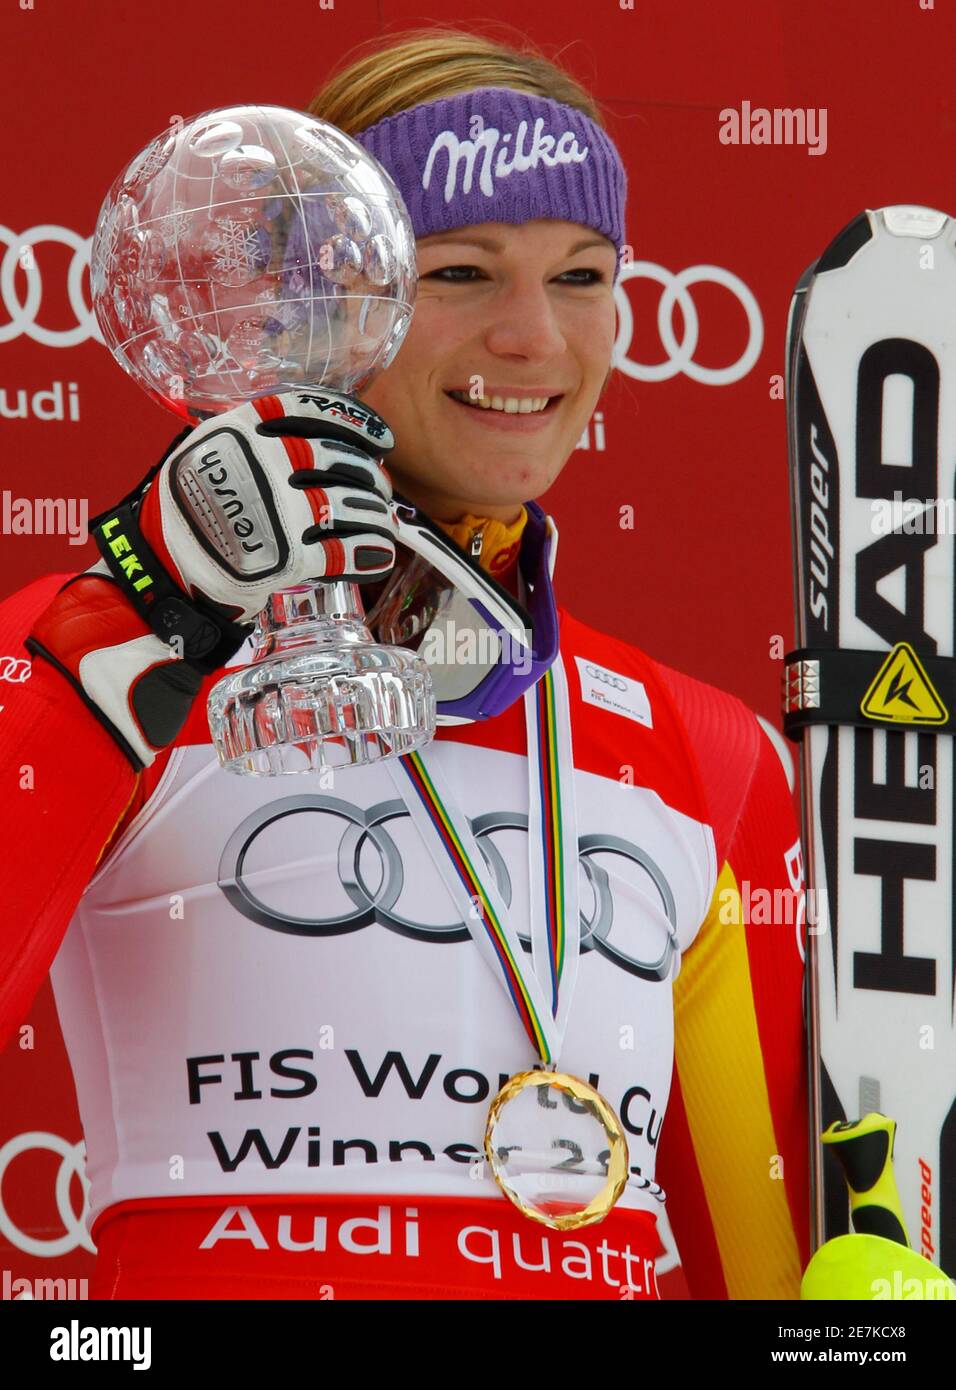 Maria Riesch de Alemania posa con el trofeo femenino de la Copa Mundial de esquí alpino Slalom en las finales de la temporada en Garmisch-Partenkirchen 13 de marzo de 2010. REUTERS/Wolfgang Rattay (ESQUÍ DEPORTIVO EN ALEMANIA) Foto de stock